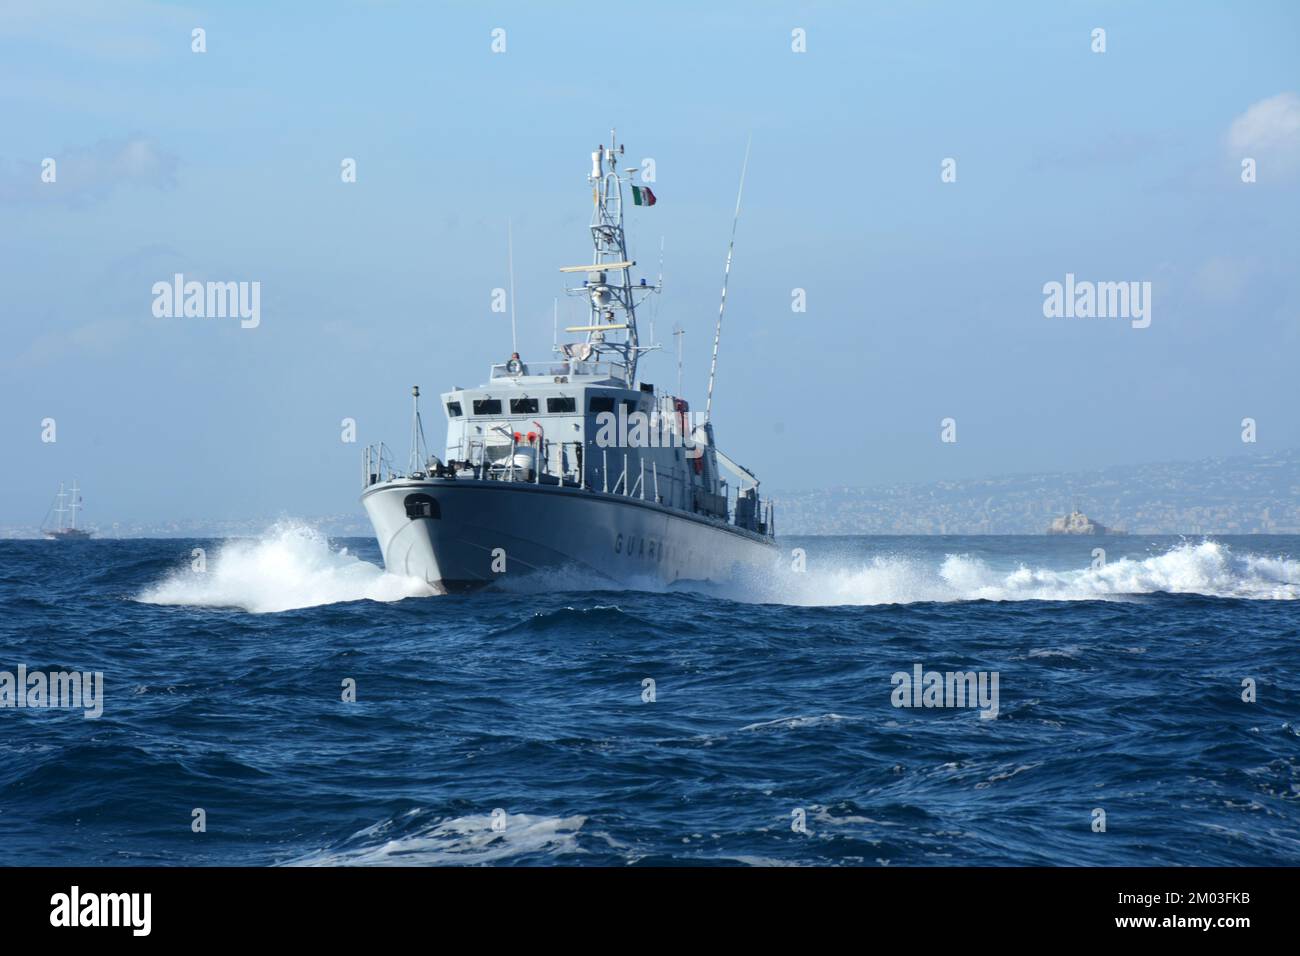 E la Guardia Costiera Italiana (Guardia Costiera), nave navale che pattugliano le acque mediterranee della Costiera Amalfitana, vicino a Sorrento, Campania, Italia. Foto Stock